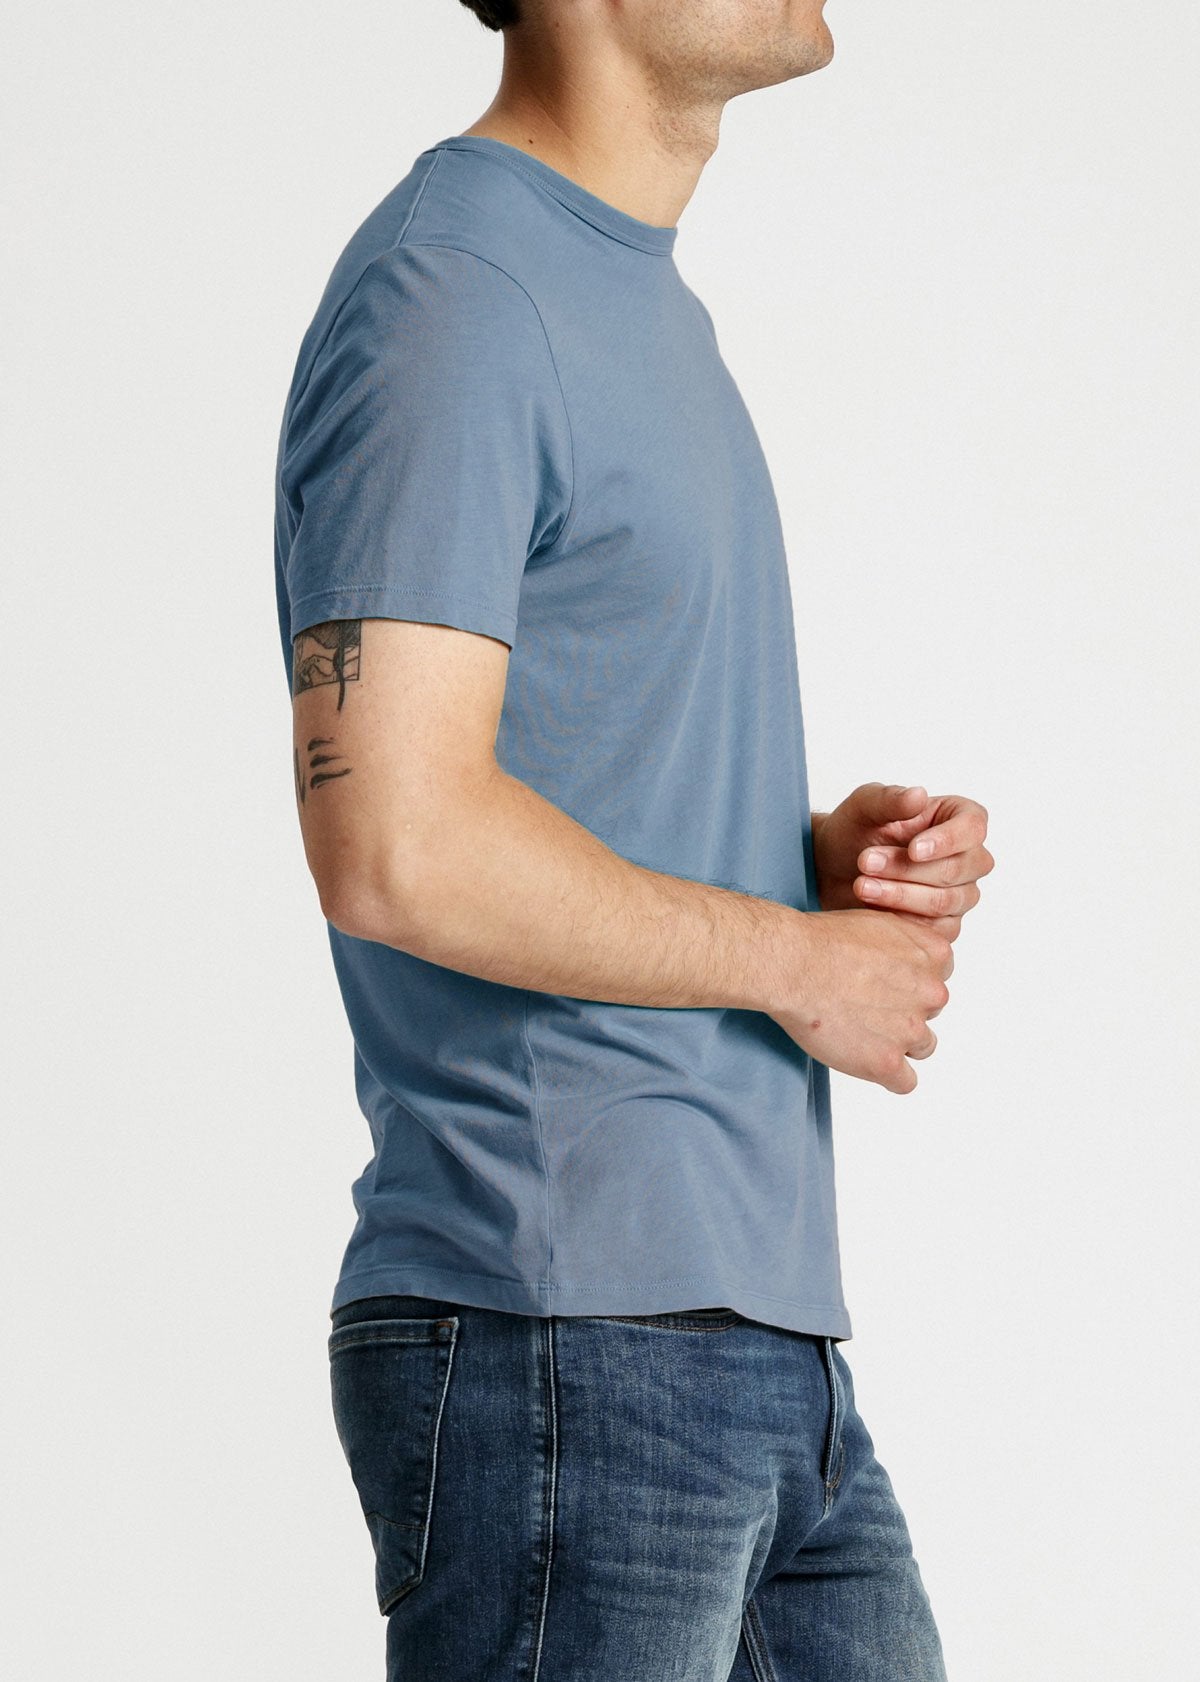 mens soft lightweight t shirt light blue side